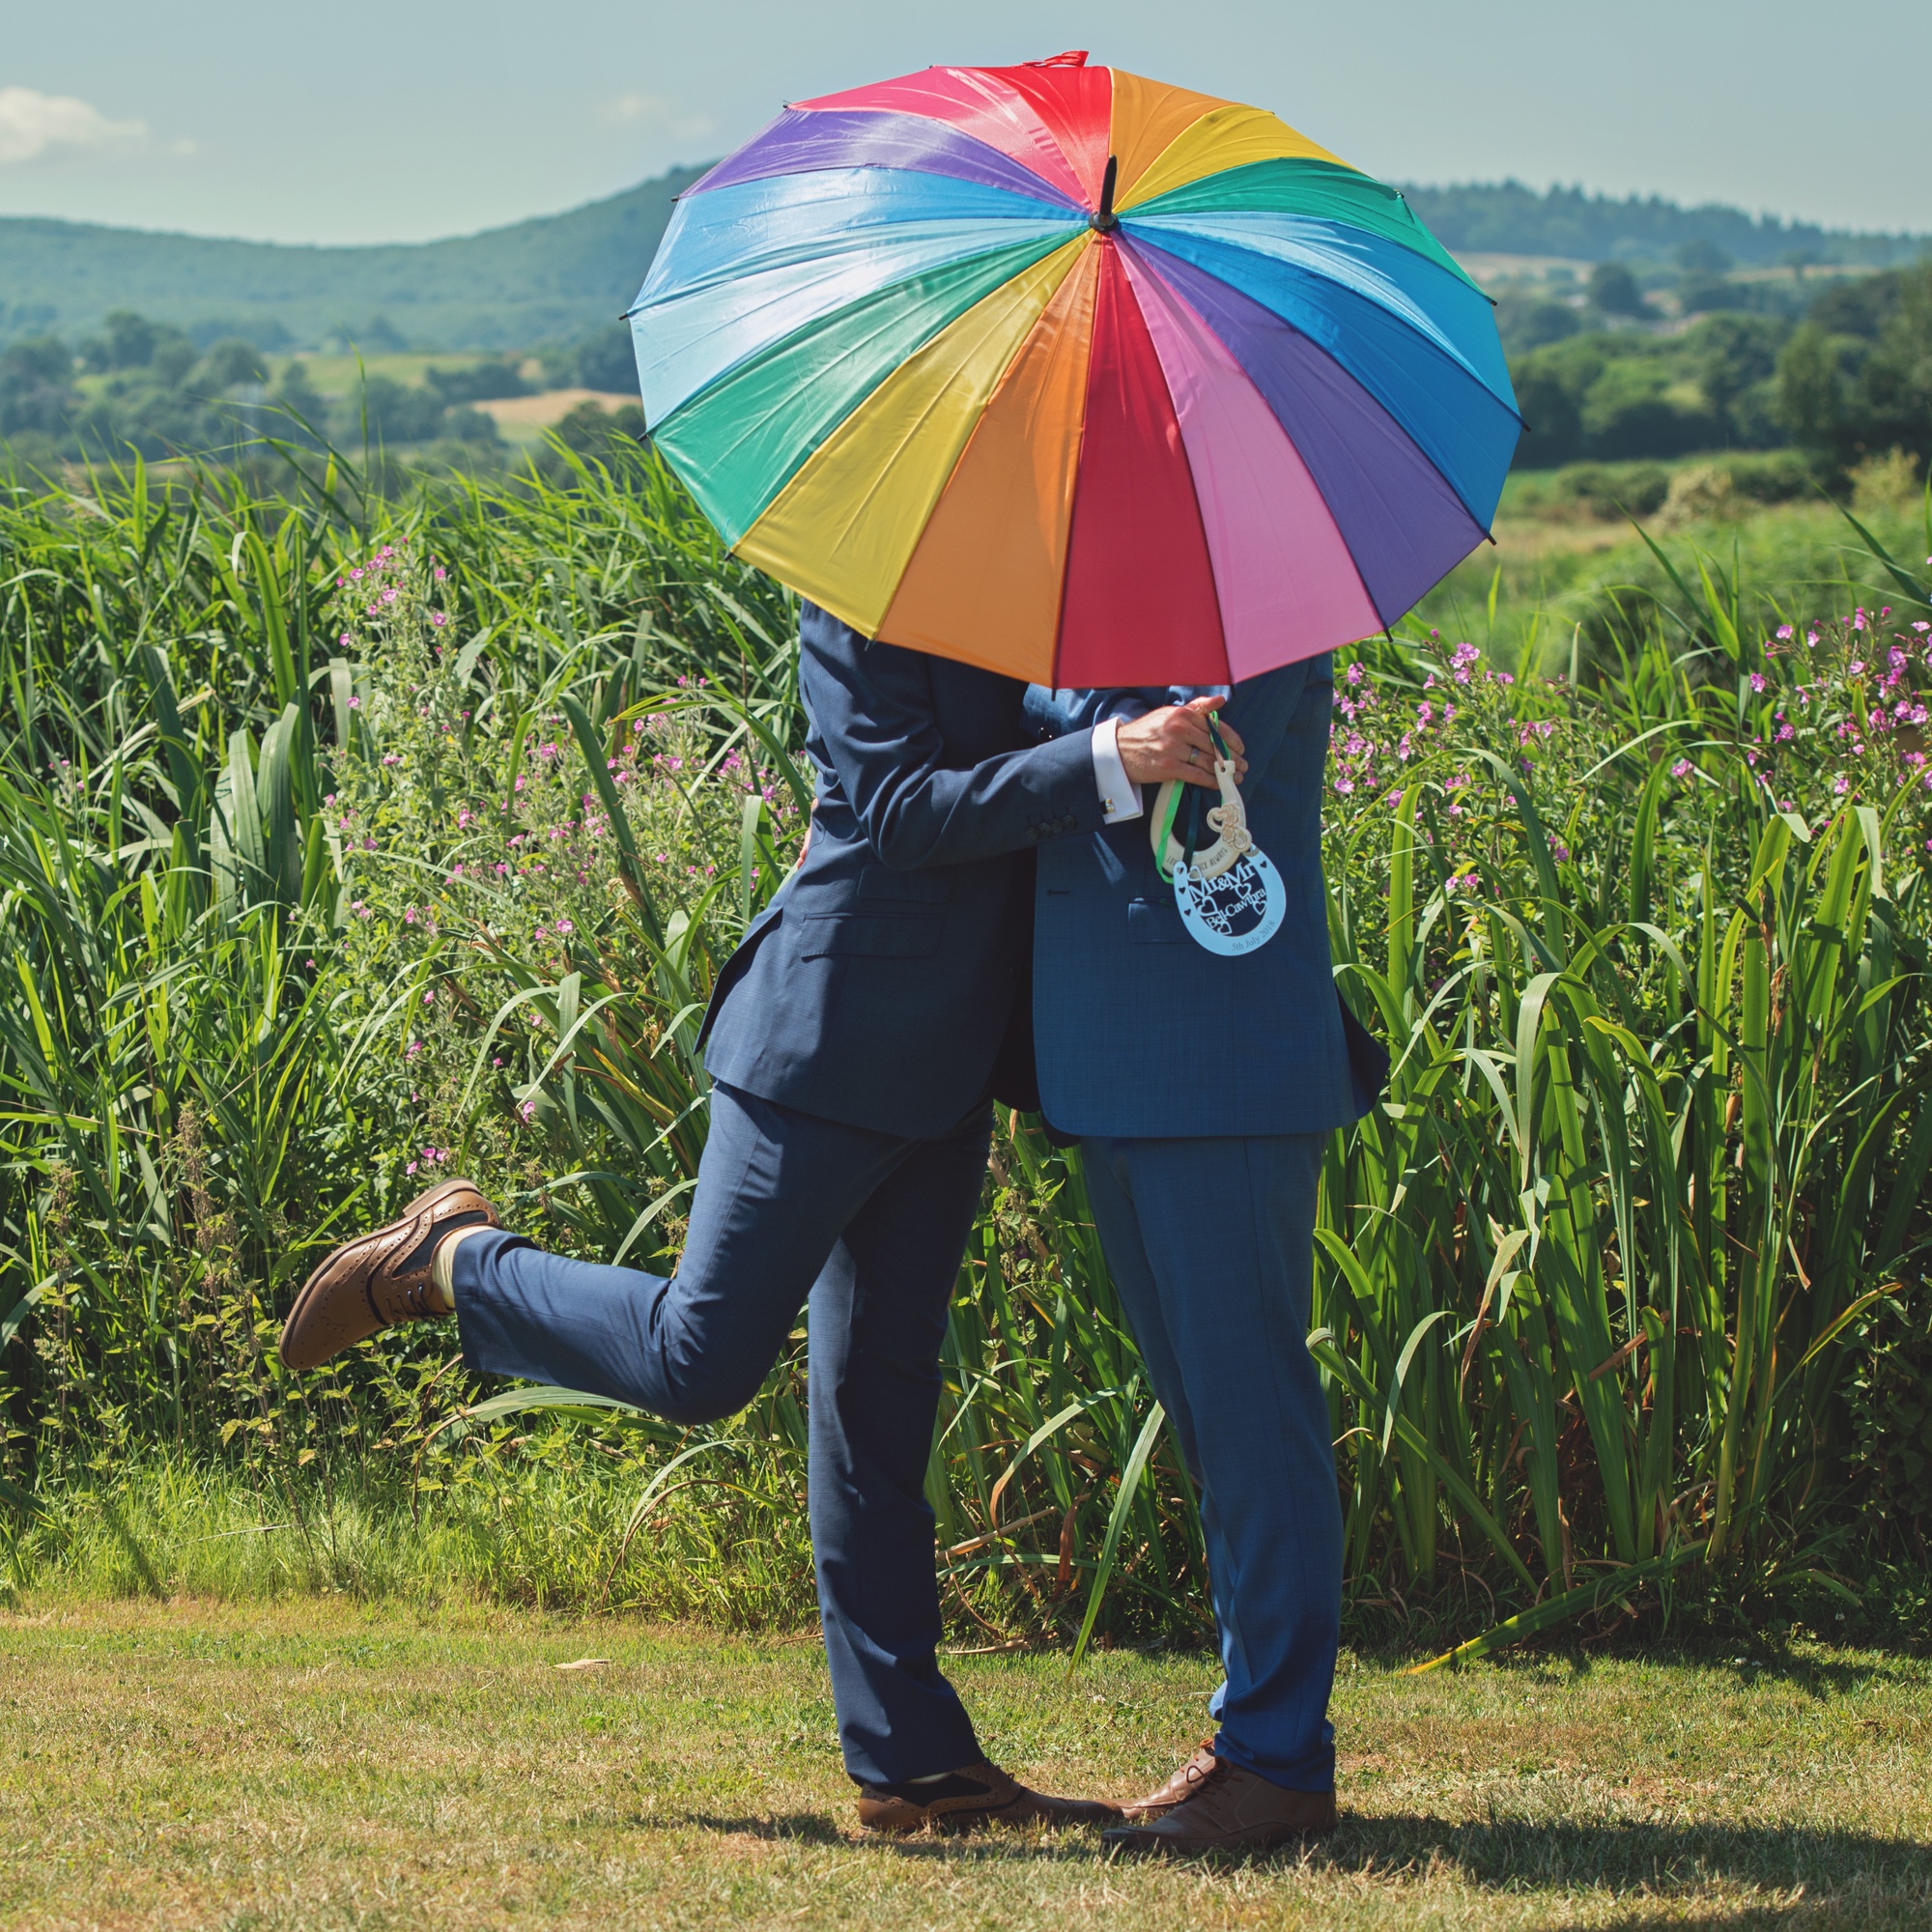 Foto: Gleichgeschlechtliches Paar hinter Regenbogen-Schirm